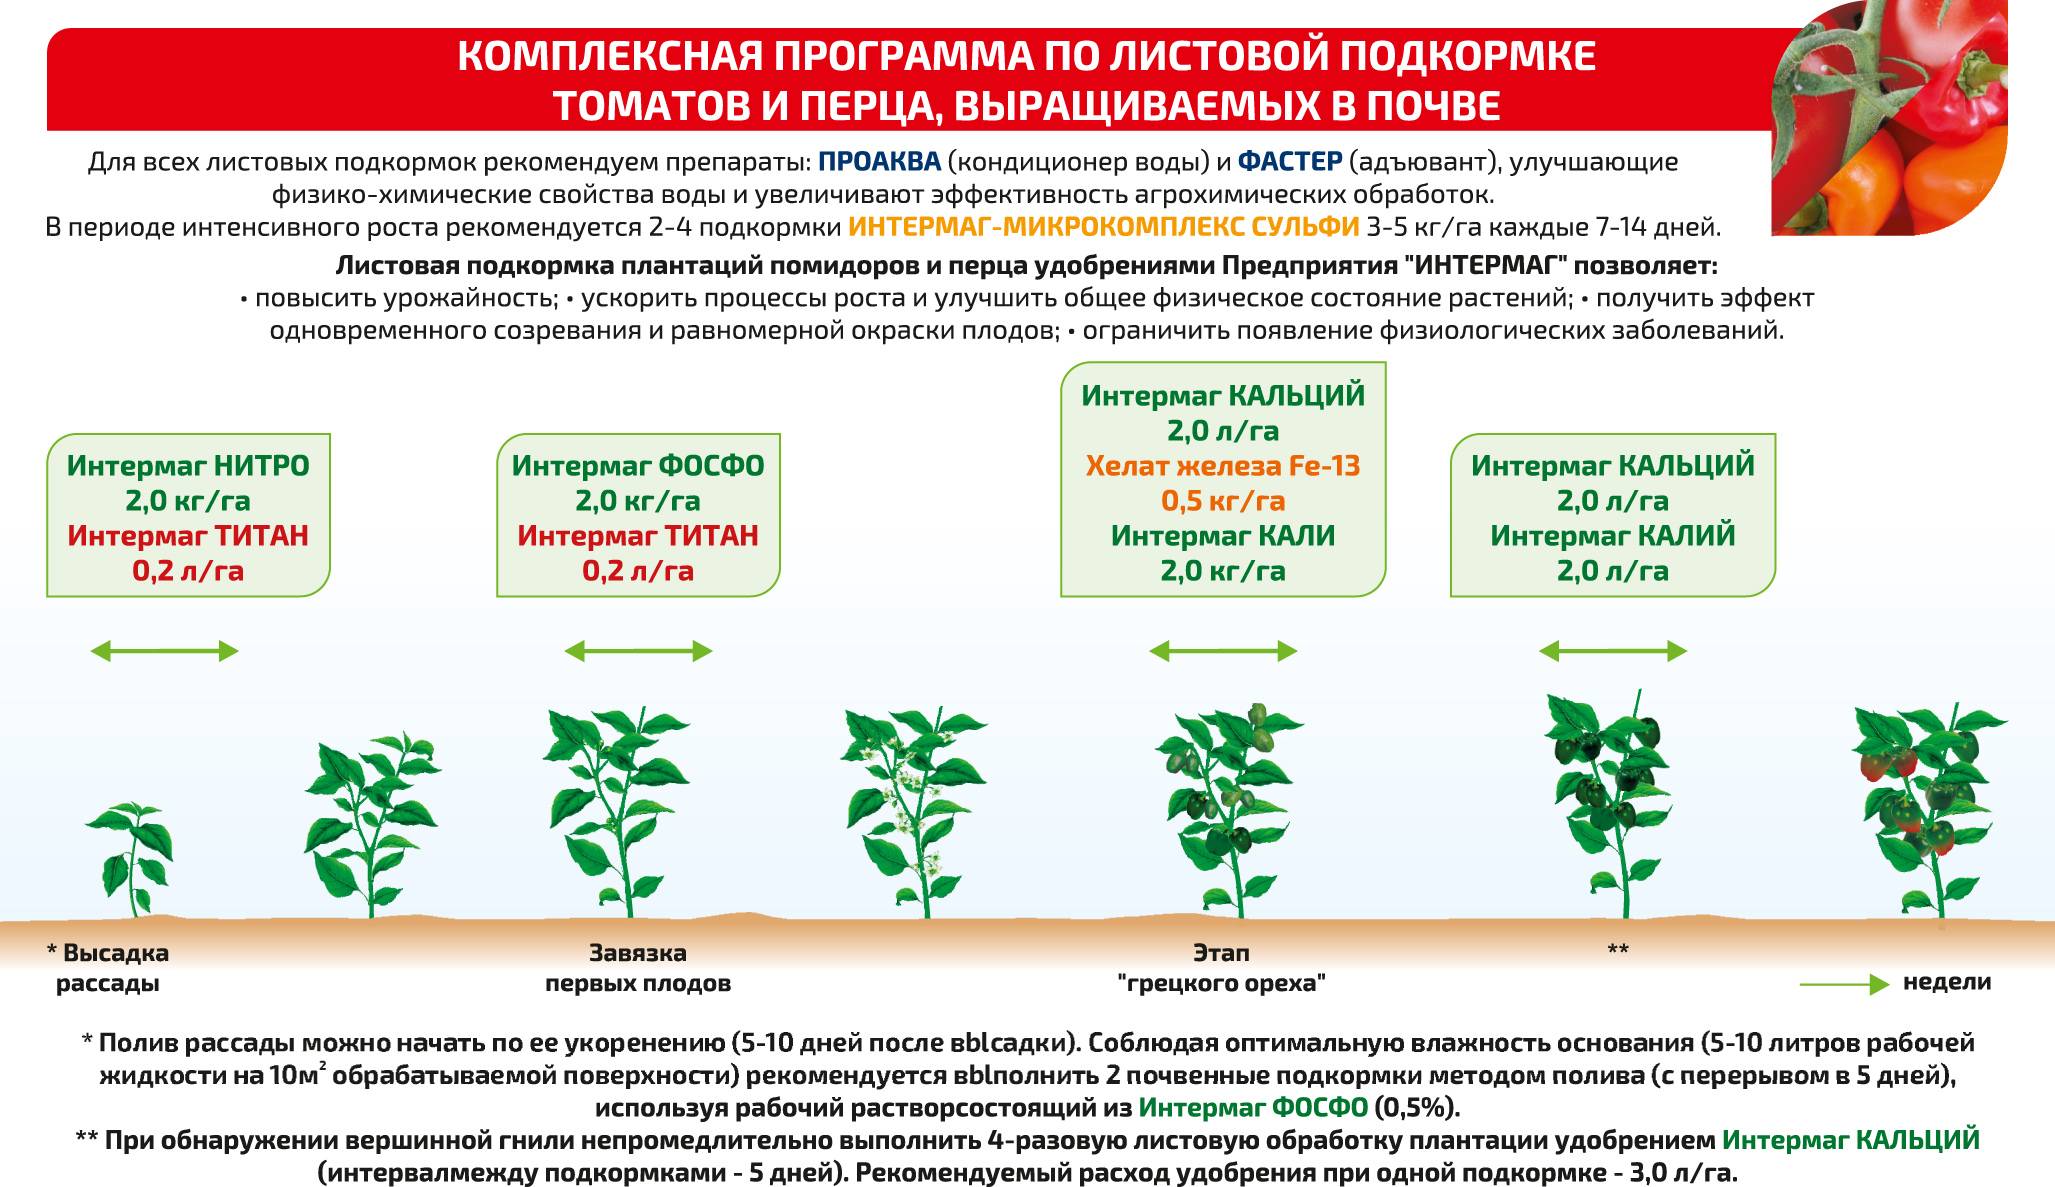 Как выращивать щавель в открытом грунте и в домашних условиях? рекомендации на ydoo.info